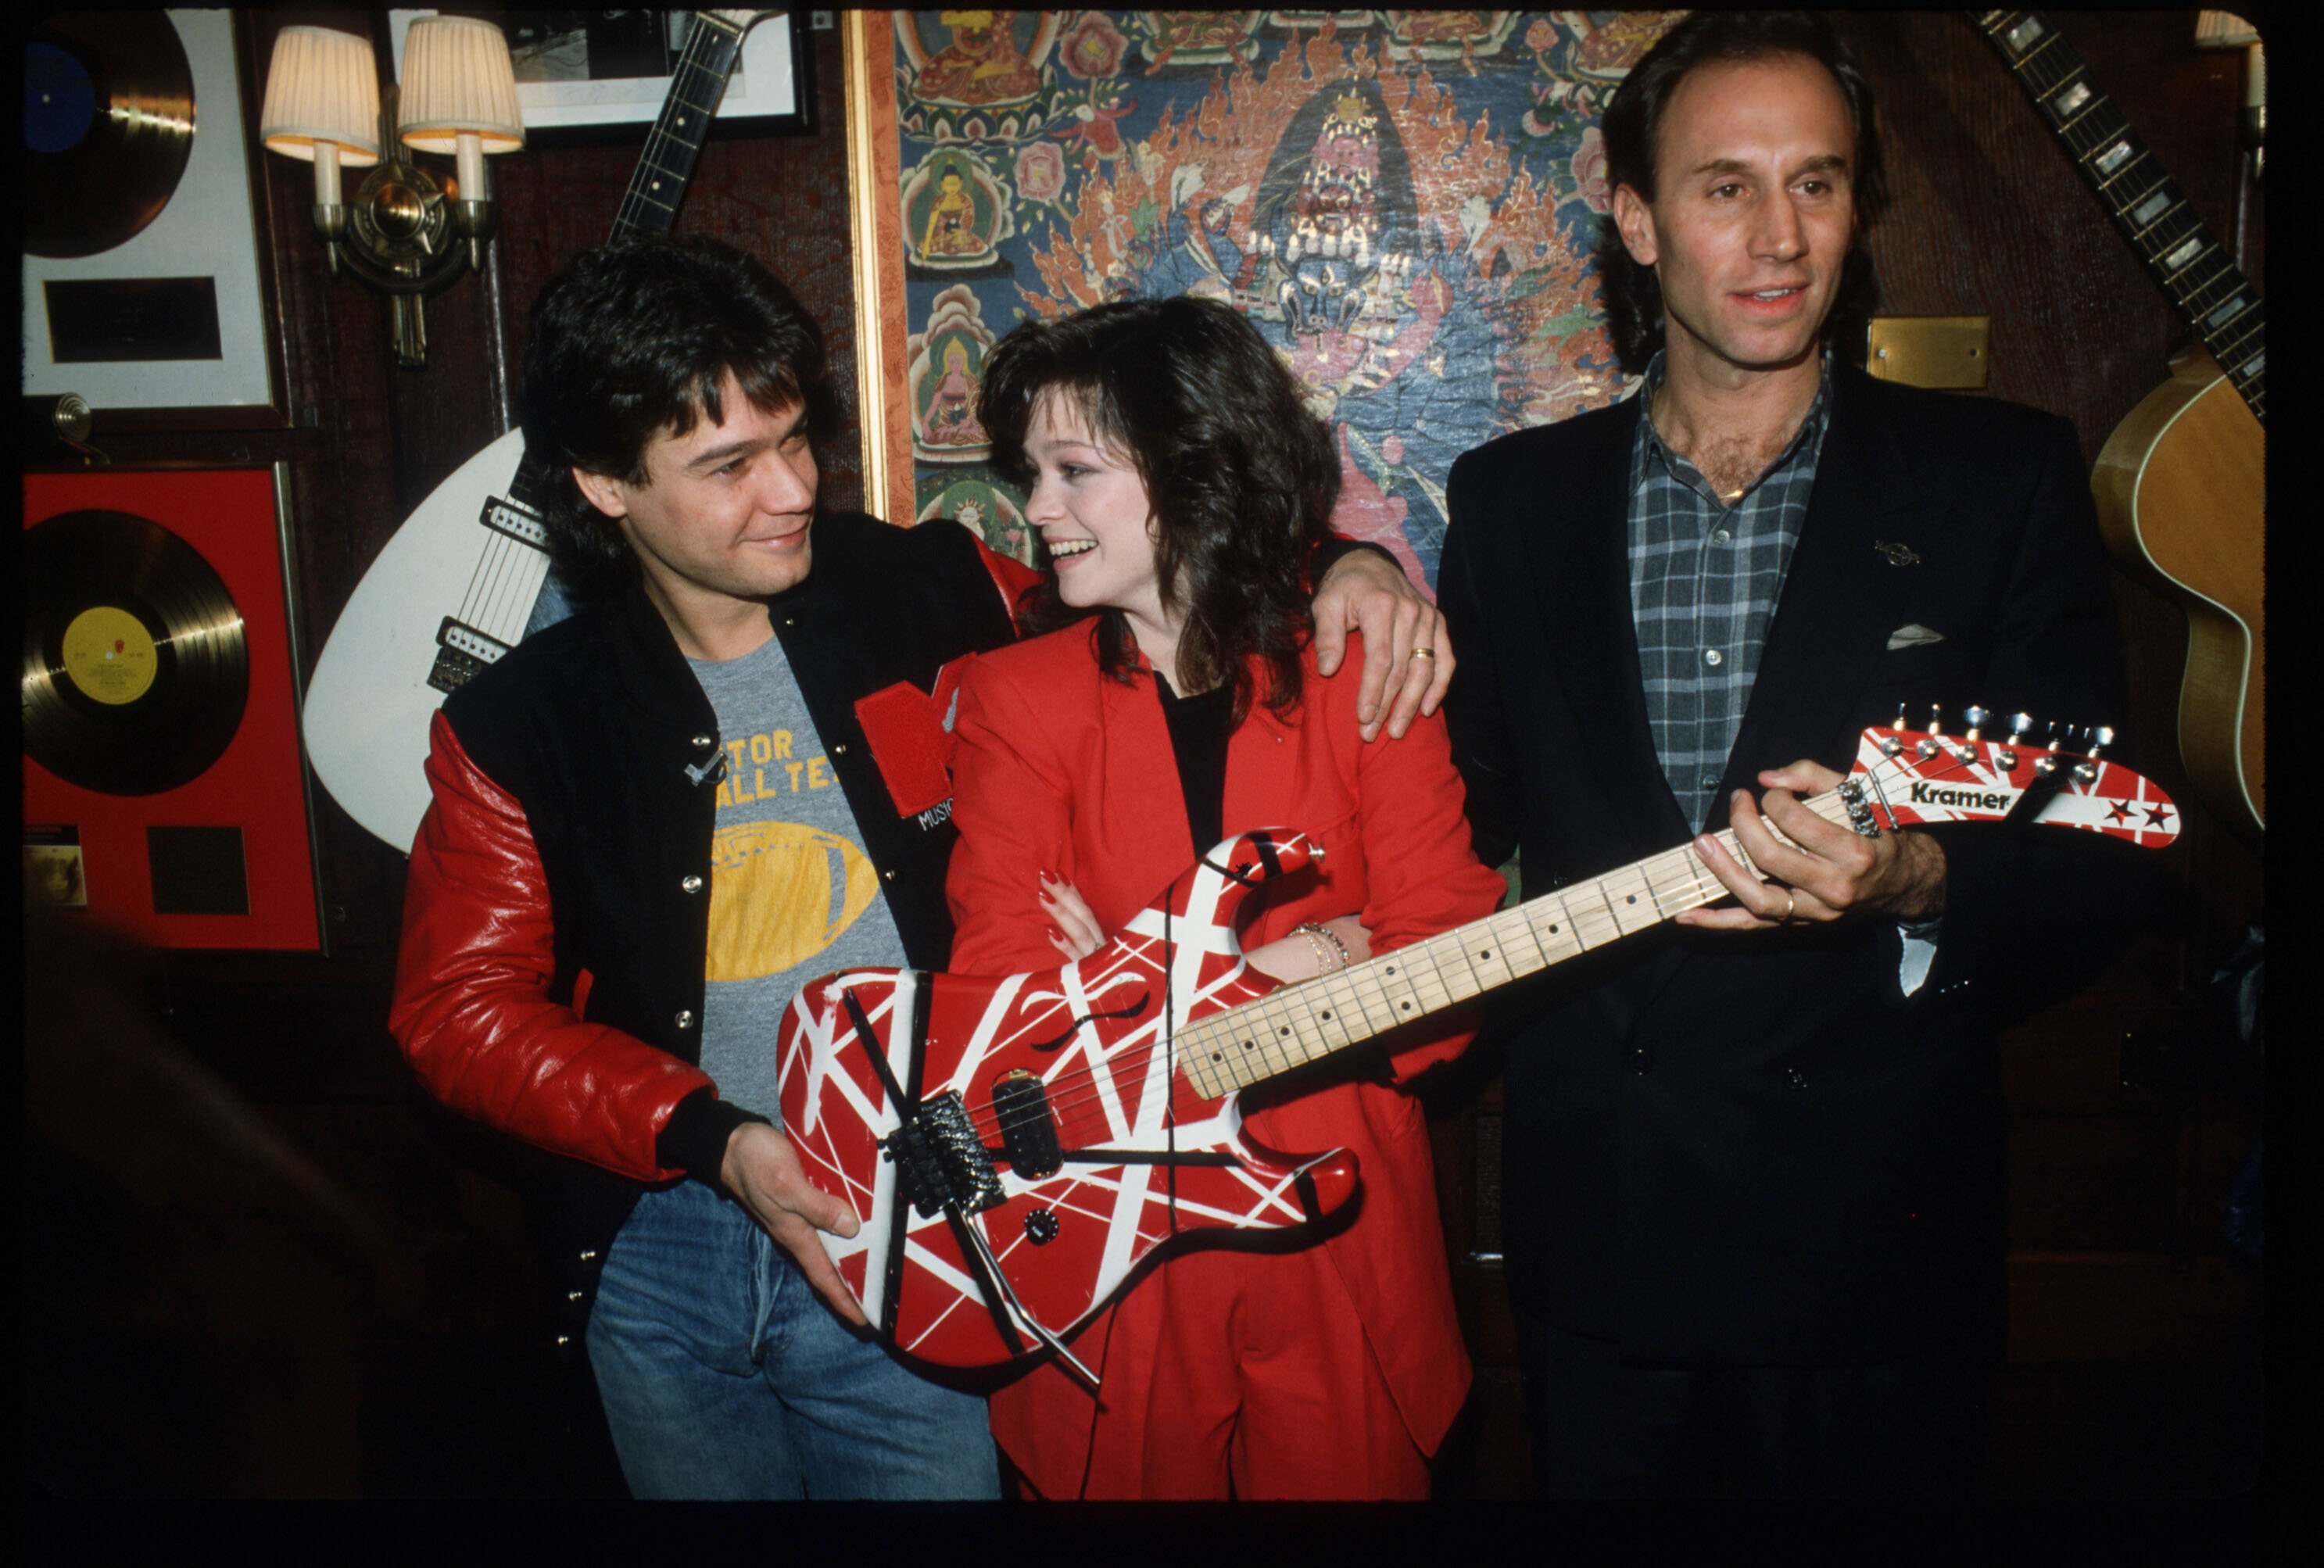 Eddie Van Halen with Valerie Bertinelli in 1995